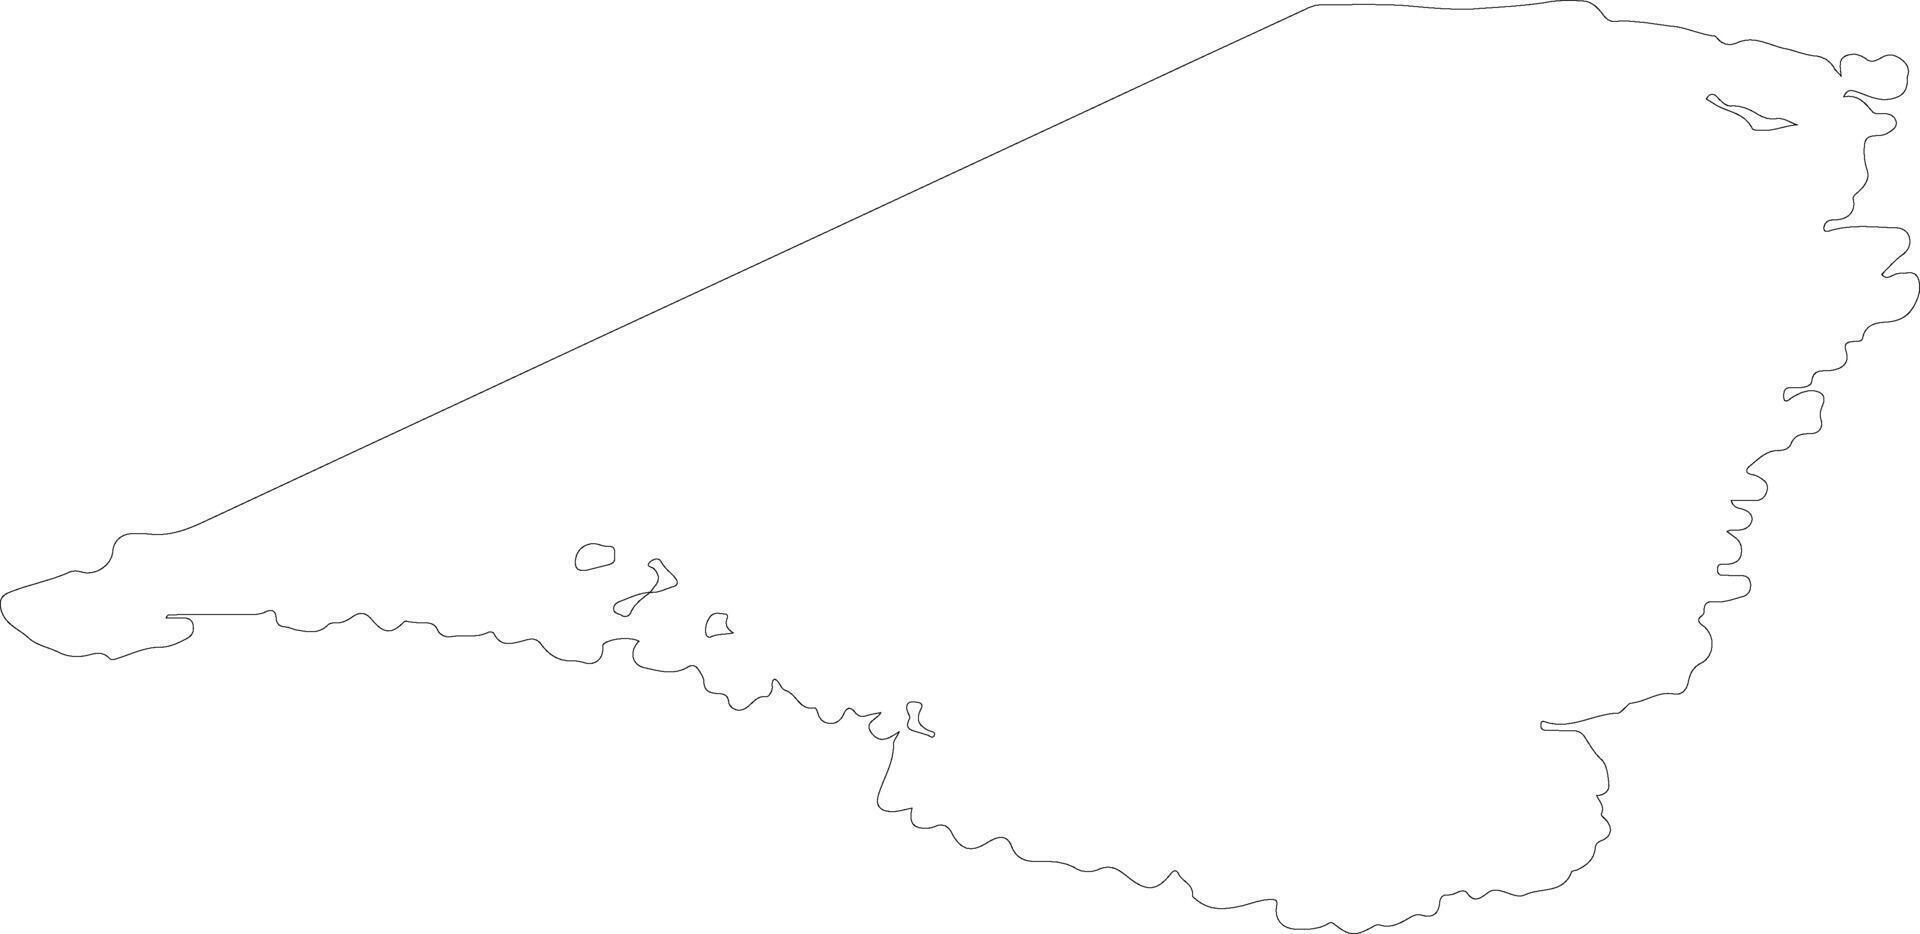 Kommune kujalleq Grönland Gliederung Karte vektor